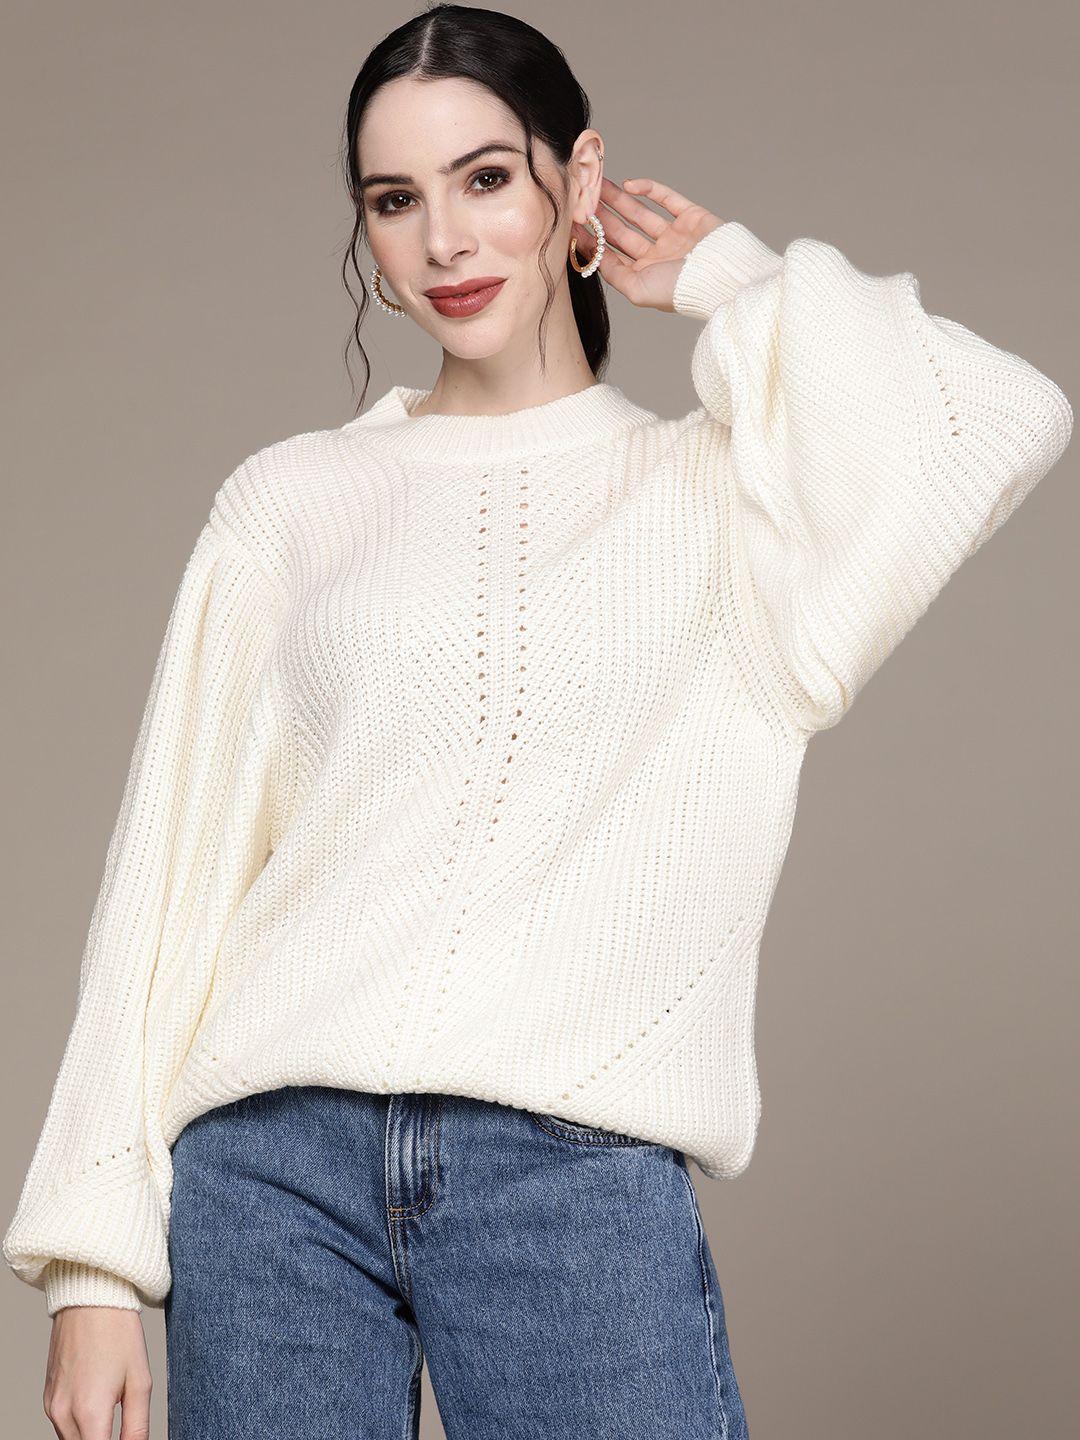 aarke ritu kumar women white cable knit sweater